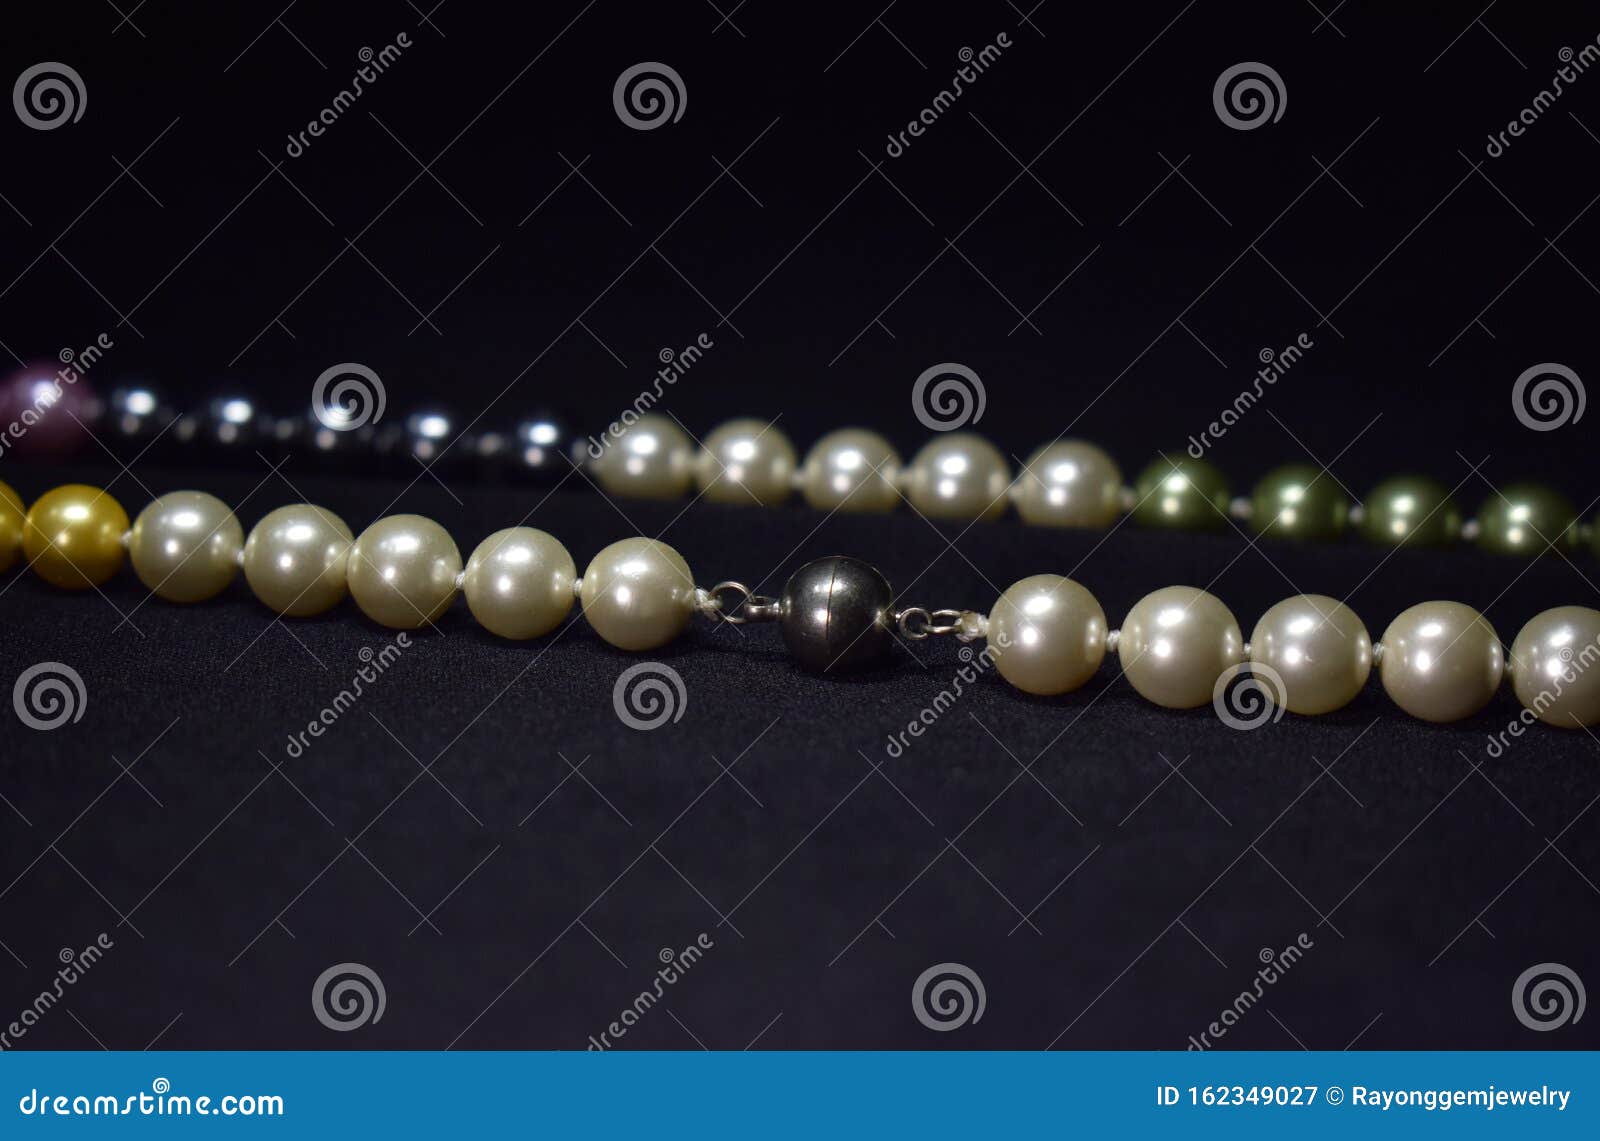 Настоящее жемчужное ожерелье - это натуральная жемчужина, получаемая изракушек, Стоковое Изображение - изображение насчитывающей лазурь, дороге:162349027